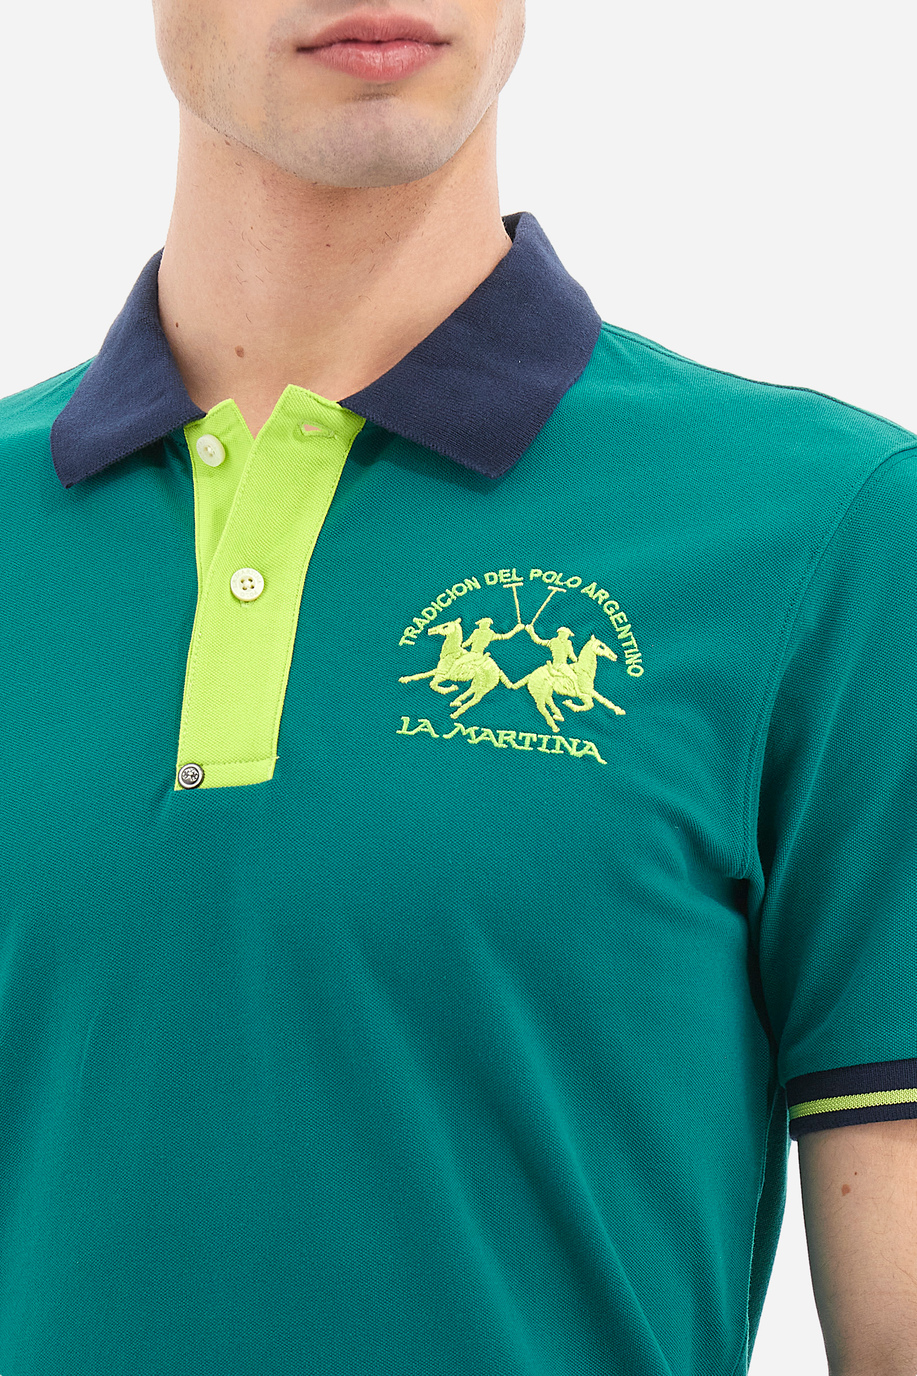 Herren-Poloshirt aus elastischer Baumwolle mit einfarbigen kurzen Ärmeln slim fit  -  Trixie - Poloshirts | La Martina - Official Online Shop